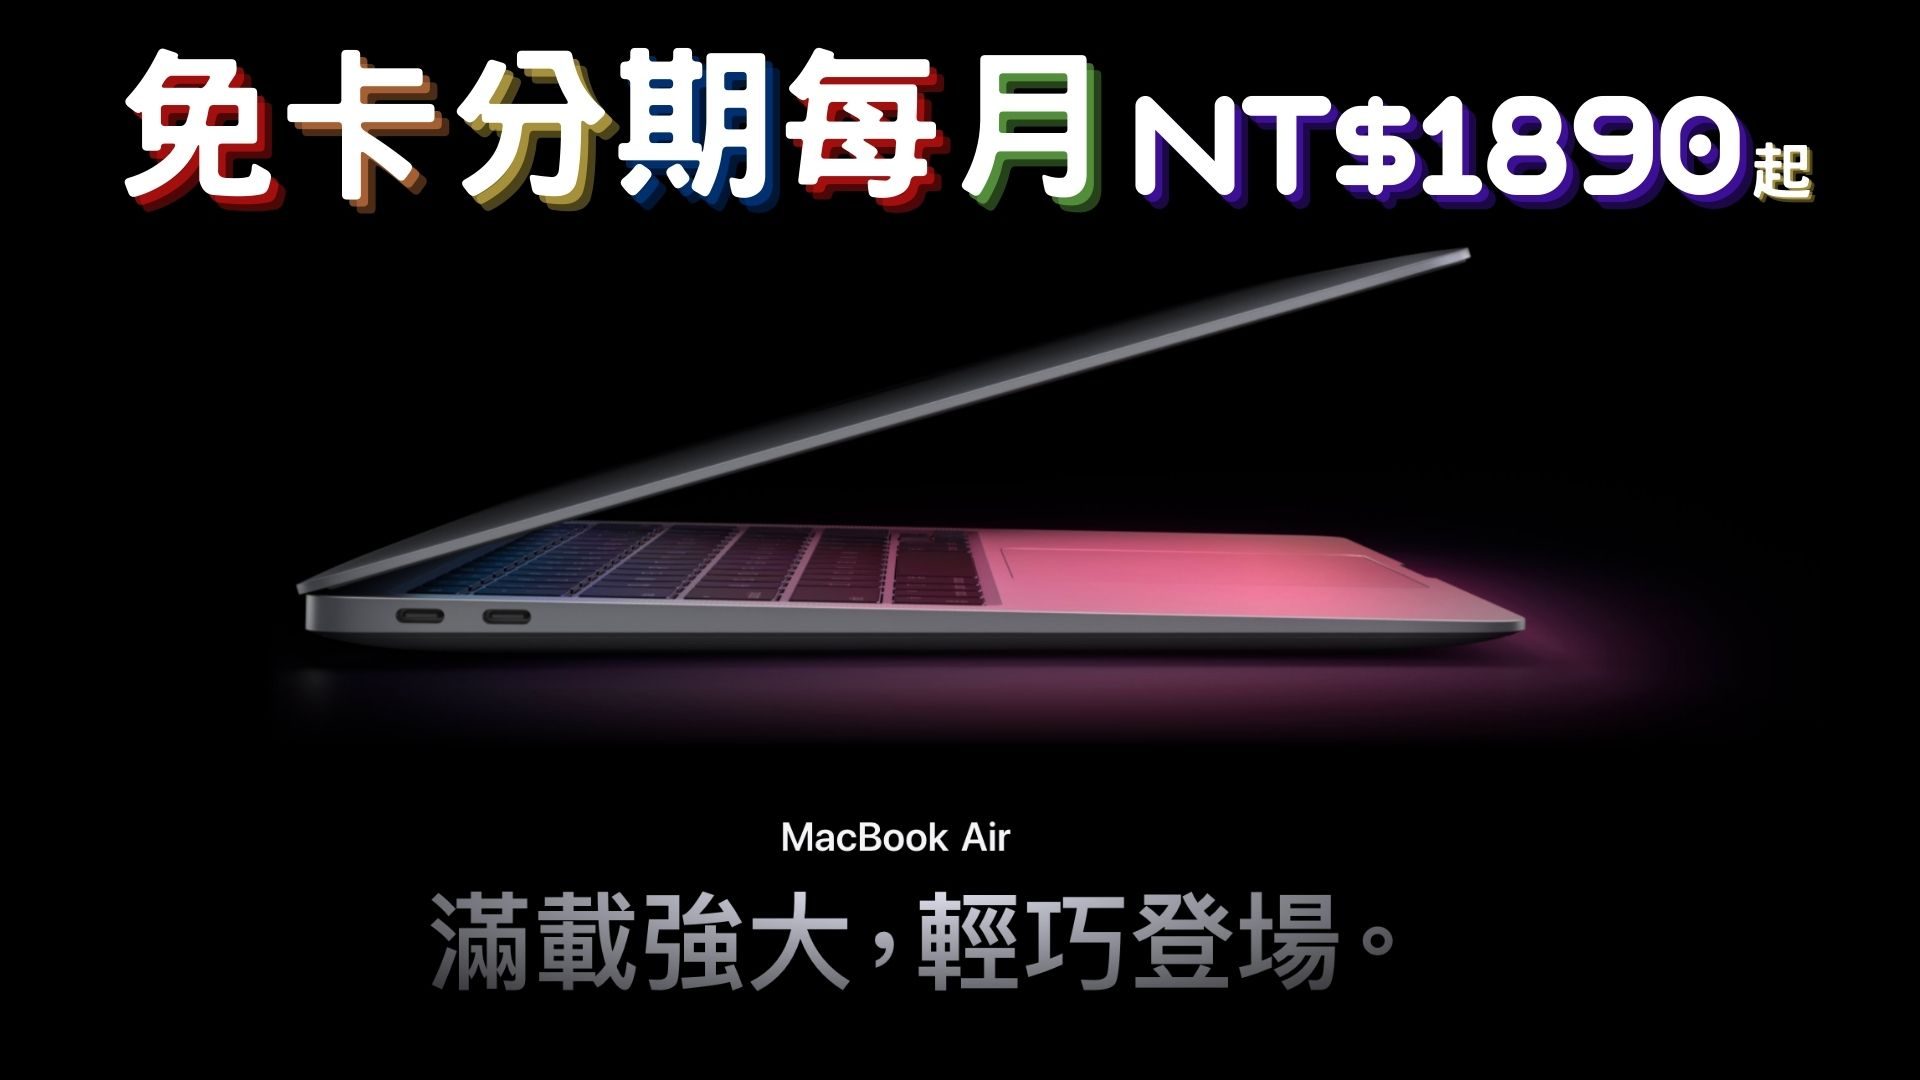 macbook air 免卡分期